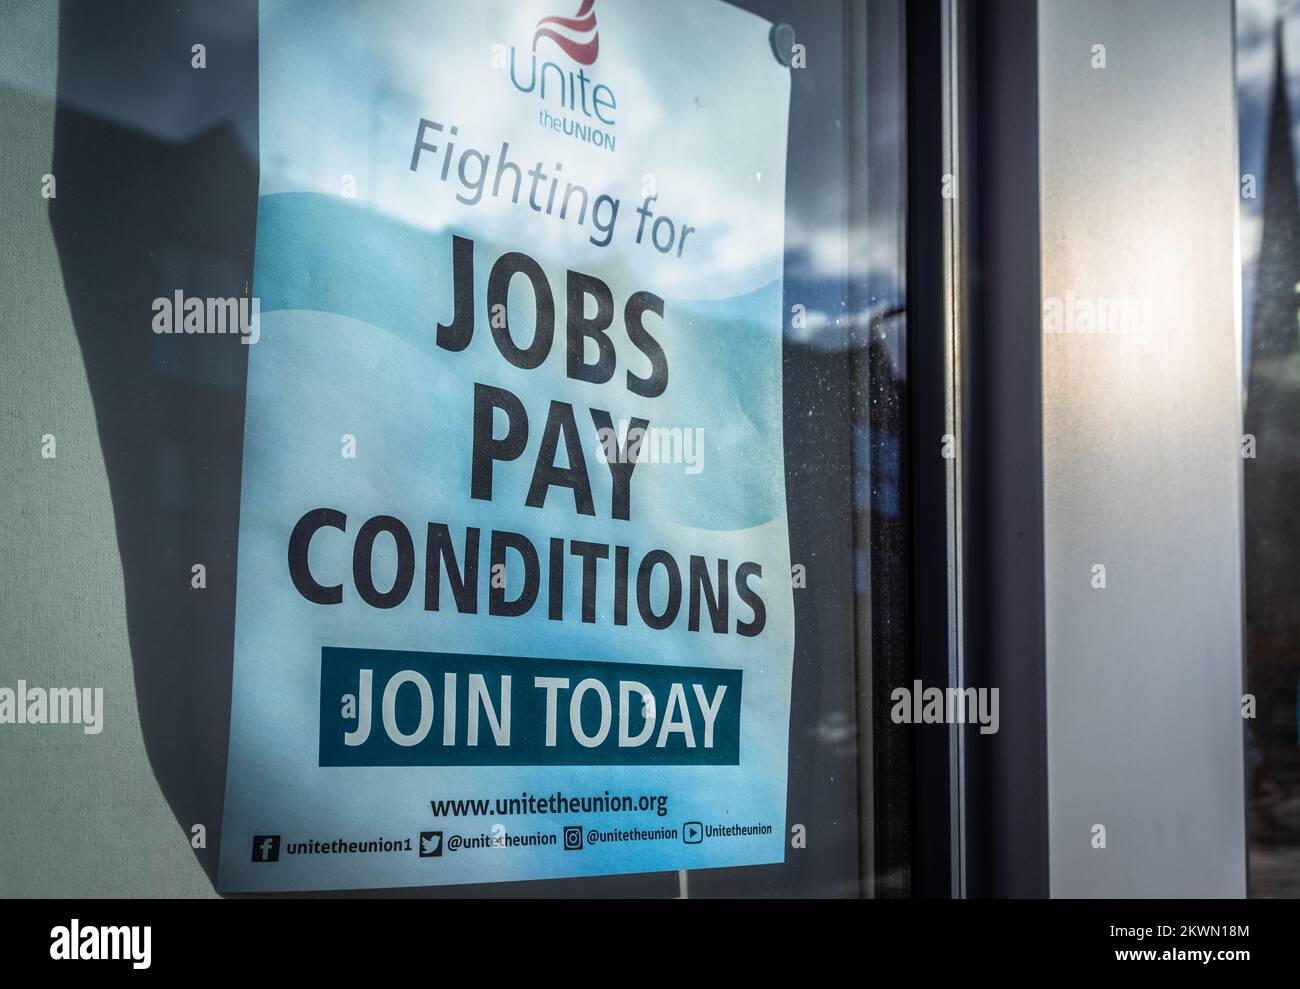 Únete a la Unión luchando por empleos y condición de pago Únete hoy en un cartel de Unite en el sur de Inglaterra, Hampshire, Reino Unido Foto de stock